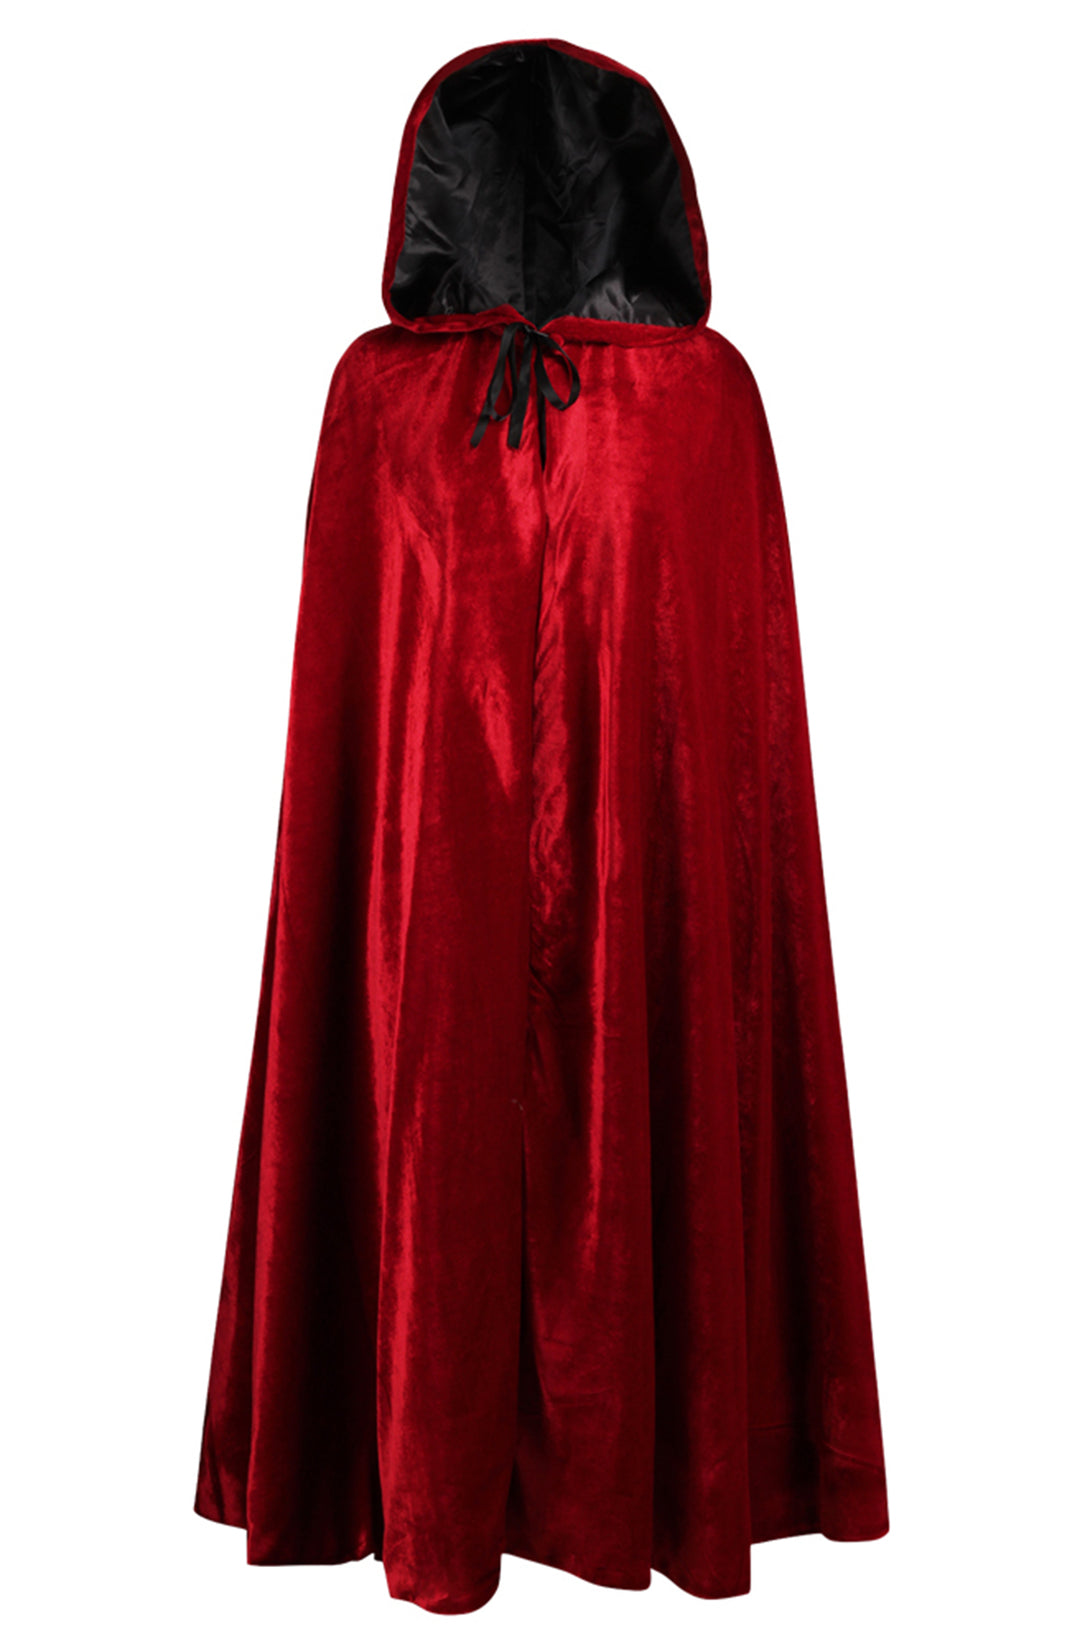 Scarlet Red Velvet Cloak Cape